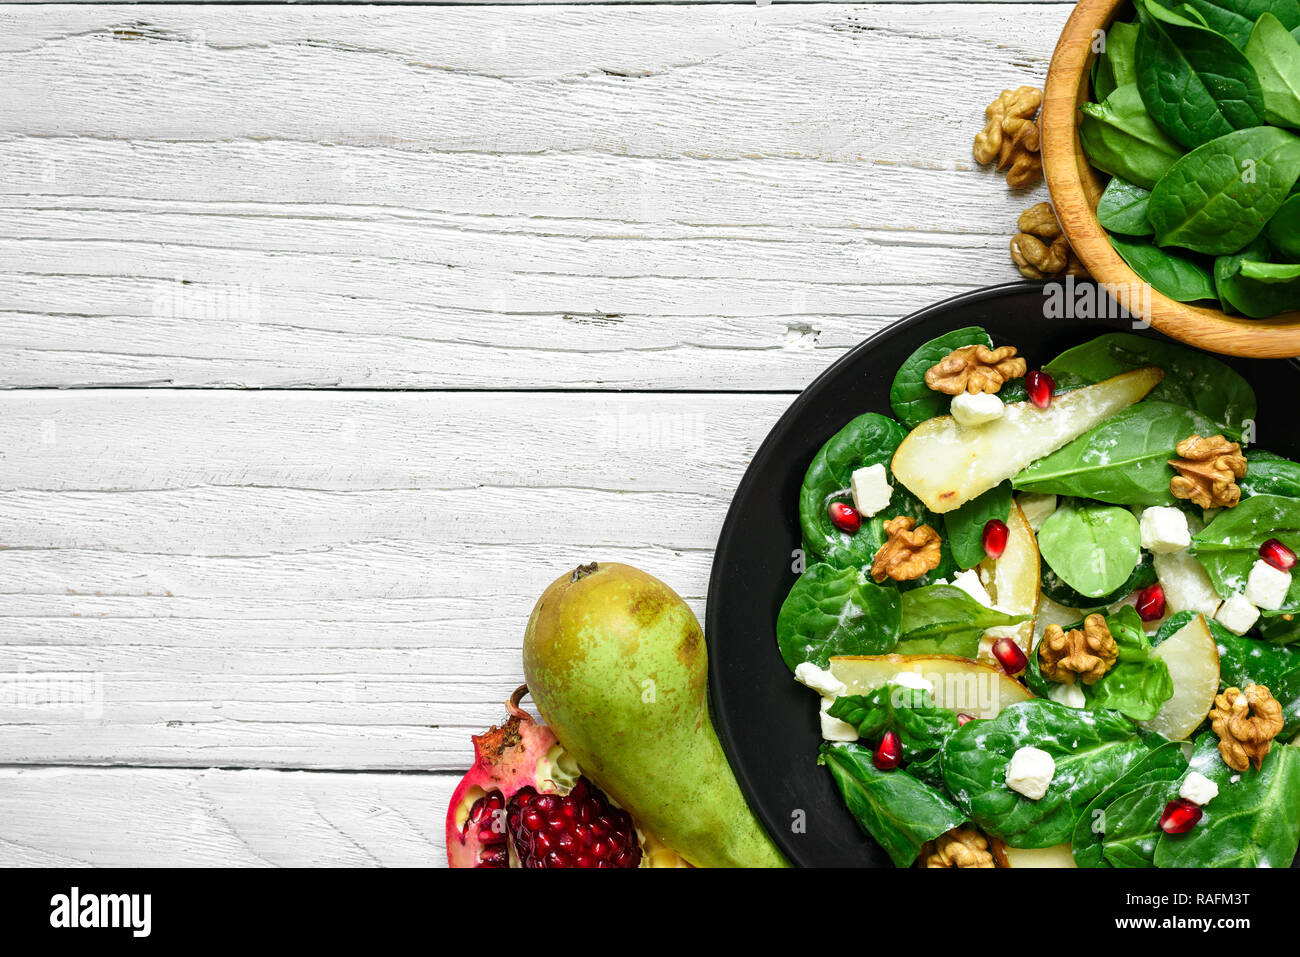 Salade vitamine avec les feuilles d'épinards, de poire, de noix, de grenade et le fromage feta en plaque noire. La nourriture végétarienne saine. top view with copy space Banque D'Images